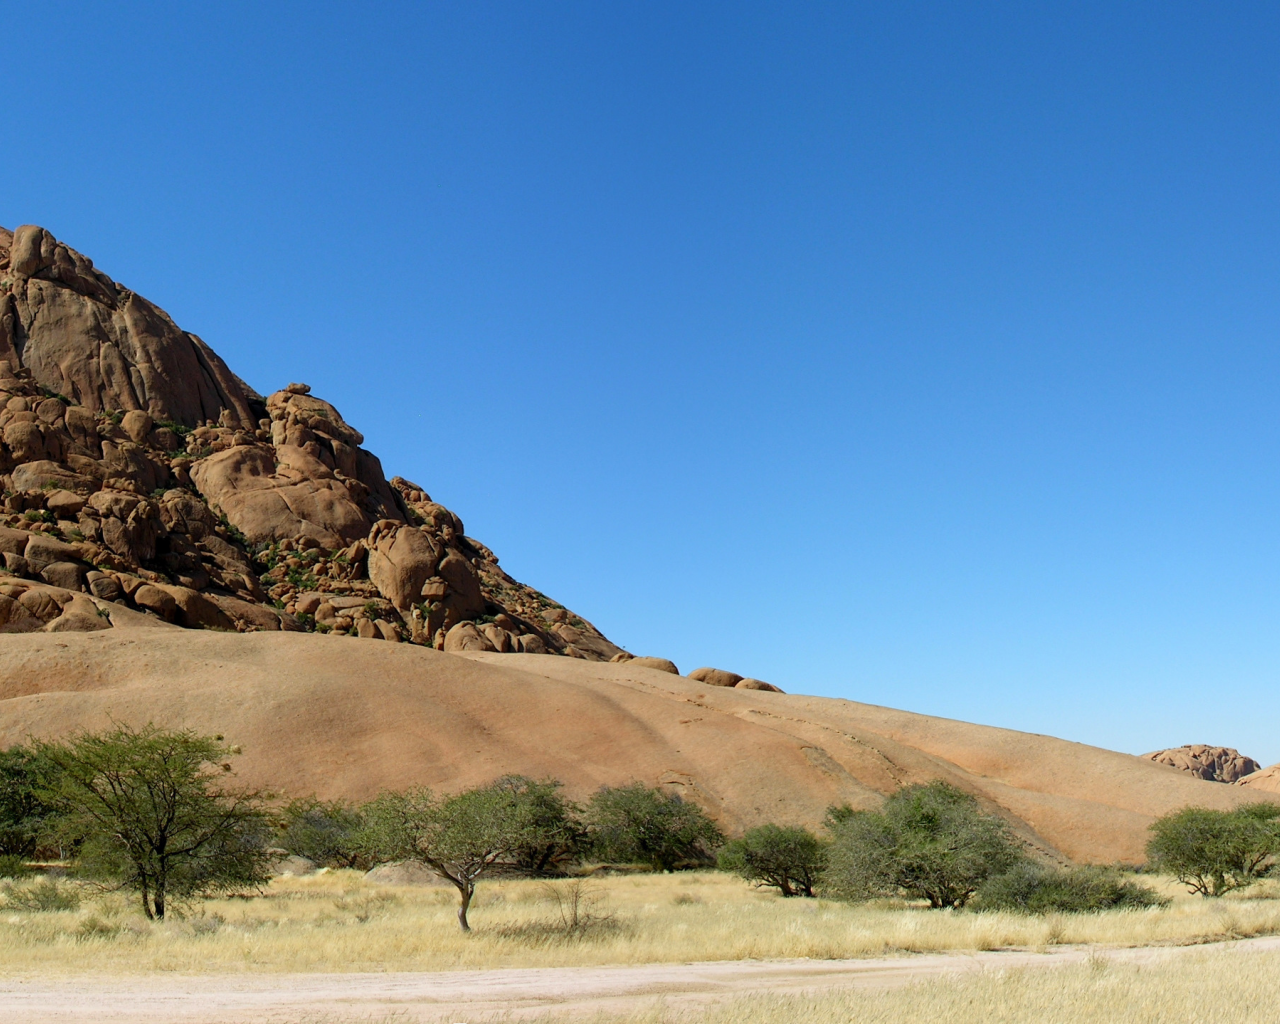 фото, панорама, namibia, гора, пустыня, деревья, африка, песок, скалы, саванна, africa, намибия, небо, пейзаж